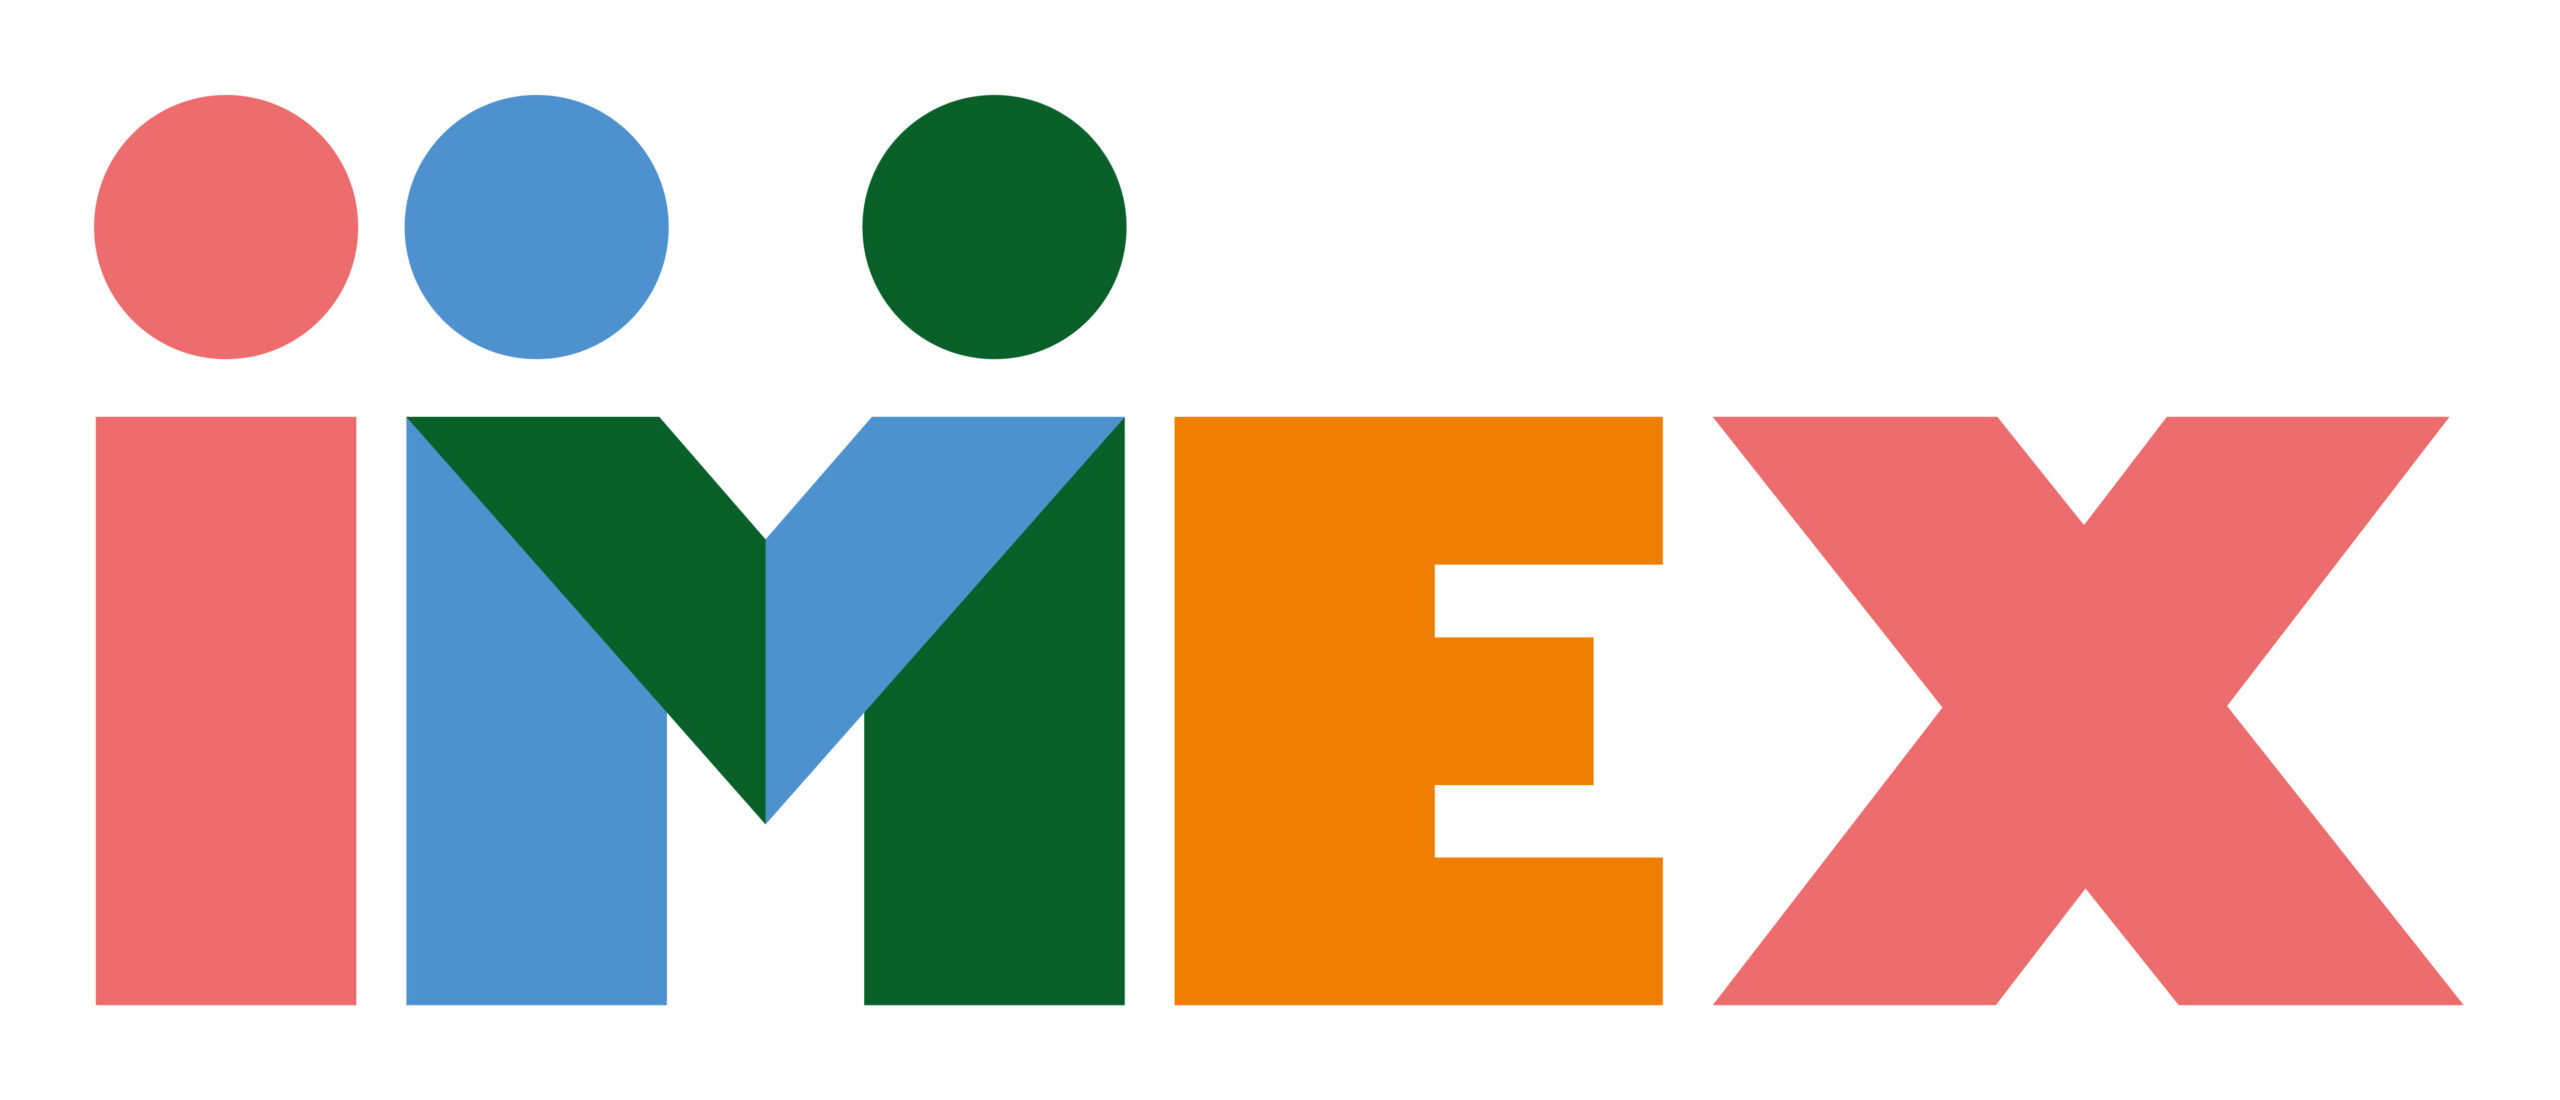 IMEX to unveil new brand identity at IMEX Frankfurt